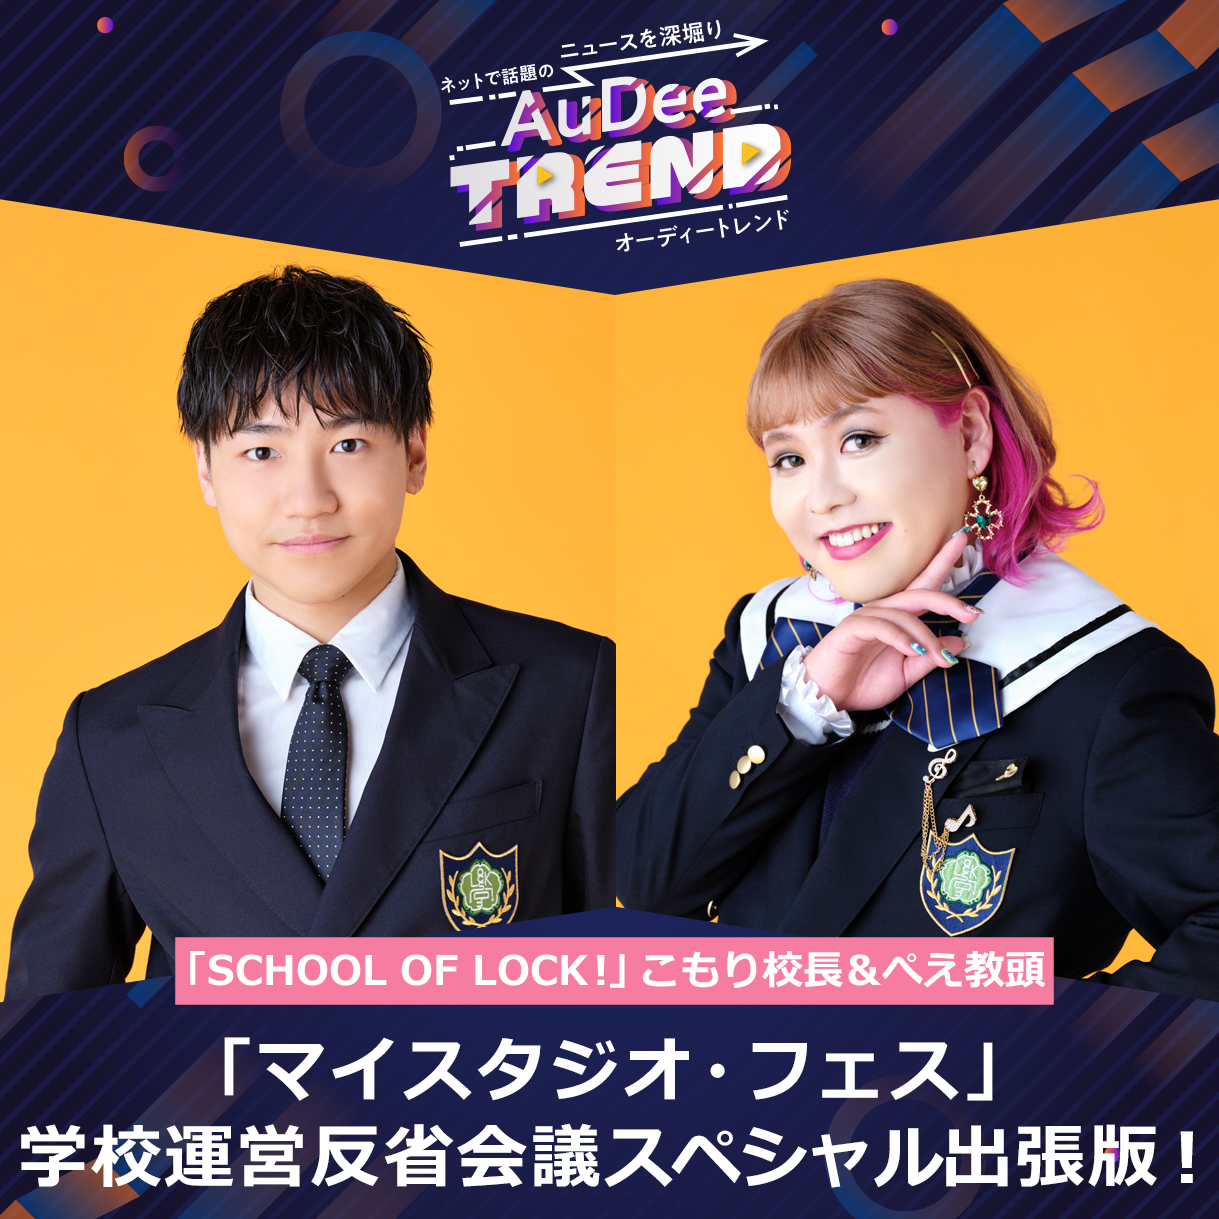 TOKYO FMのパーソナリティたちが参加！「マイスタジオ・フェス」SCHOOL OF LOCK!編